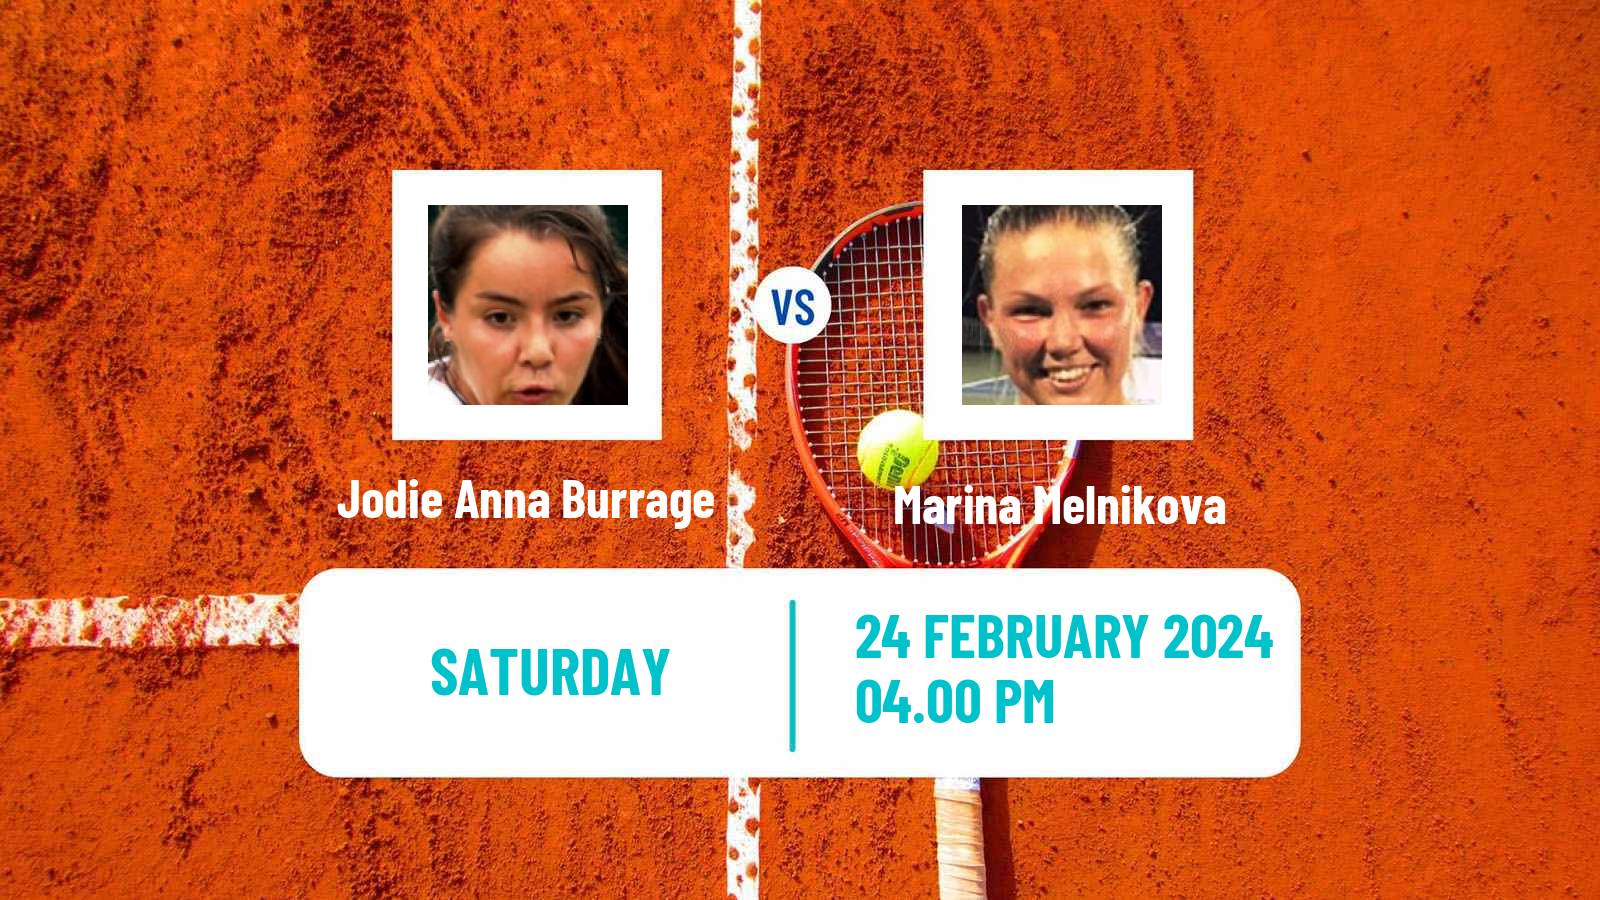 Tennis WTA San Diego Jodie Anna Burrage - Marina Melnikova